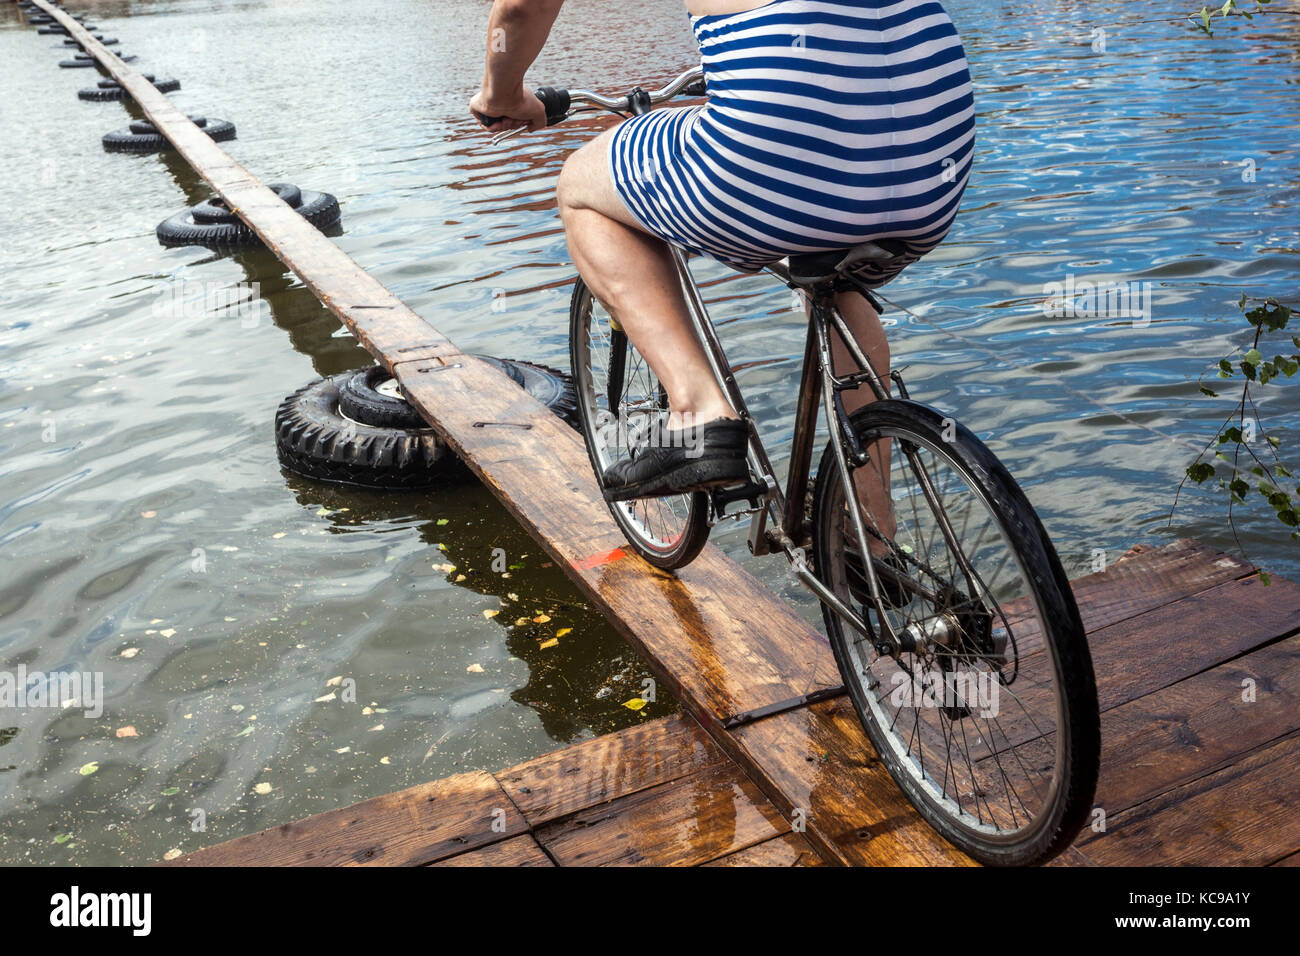 Festival tchèque, Un cycliste sur une passerelle en bois tente de traverser l'étang, un vélo de sport inhabituel à travers l'eau, une combinaison de vélo Striped Banque D'Images